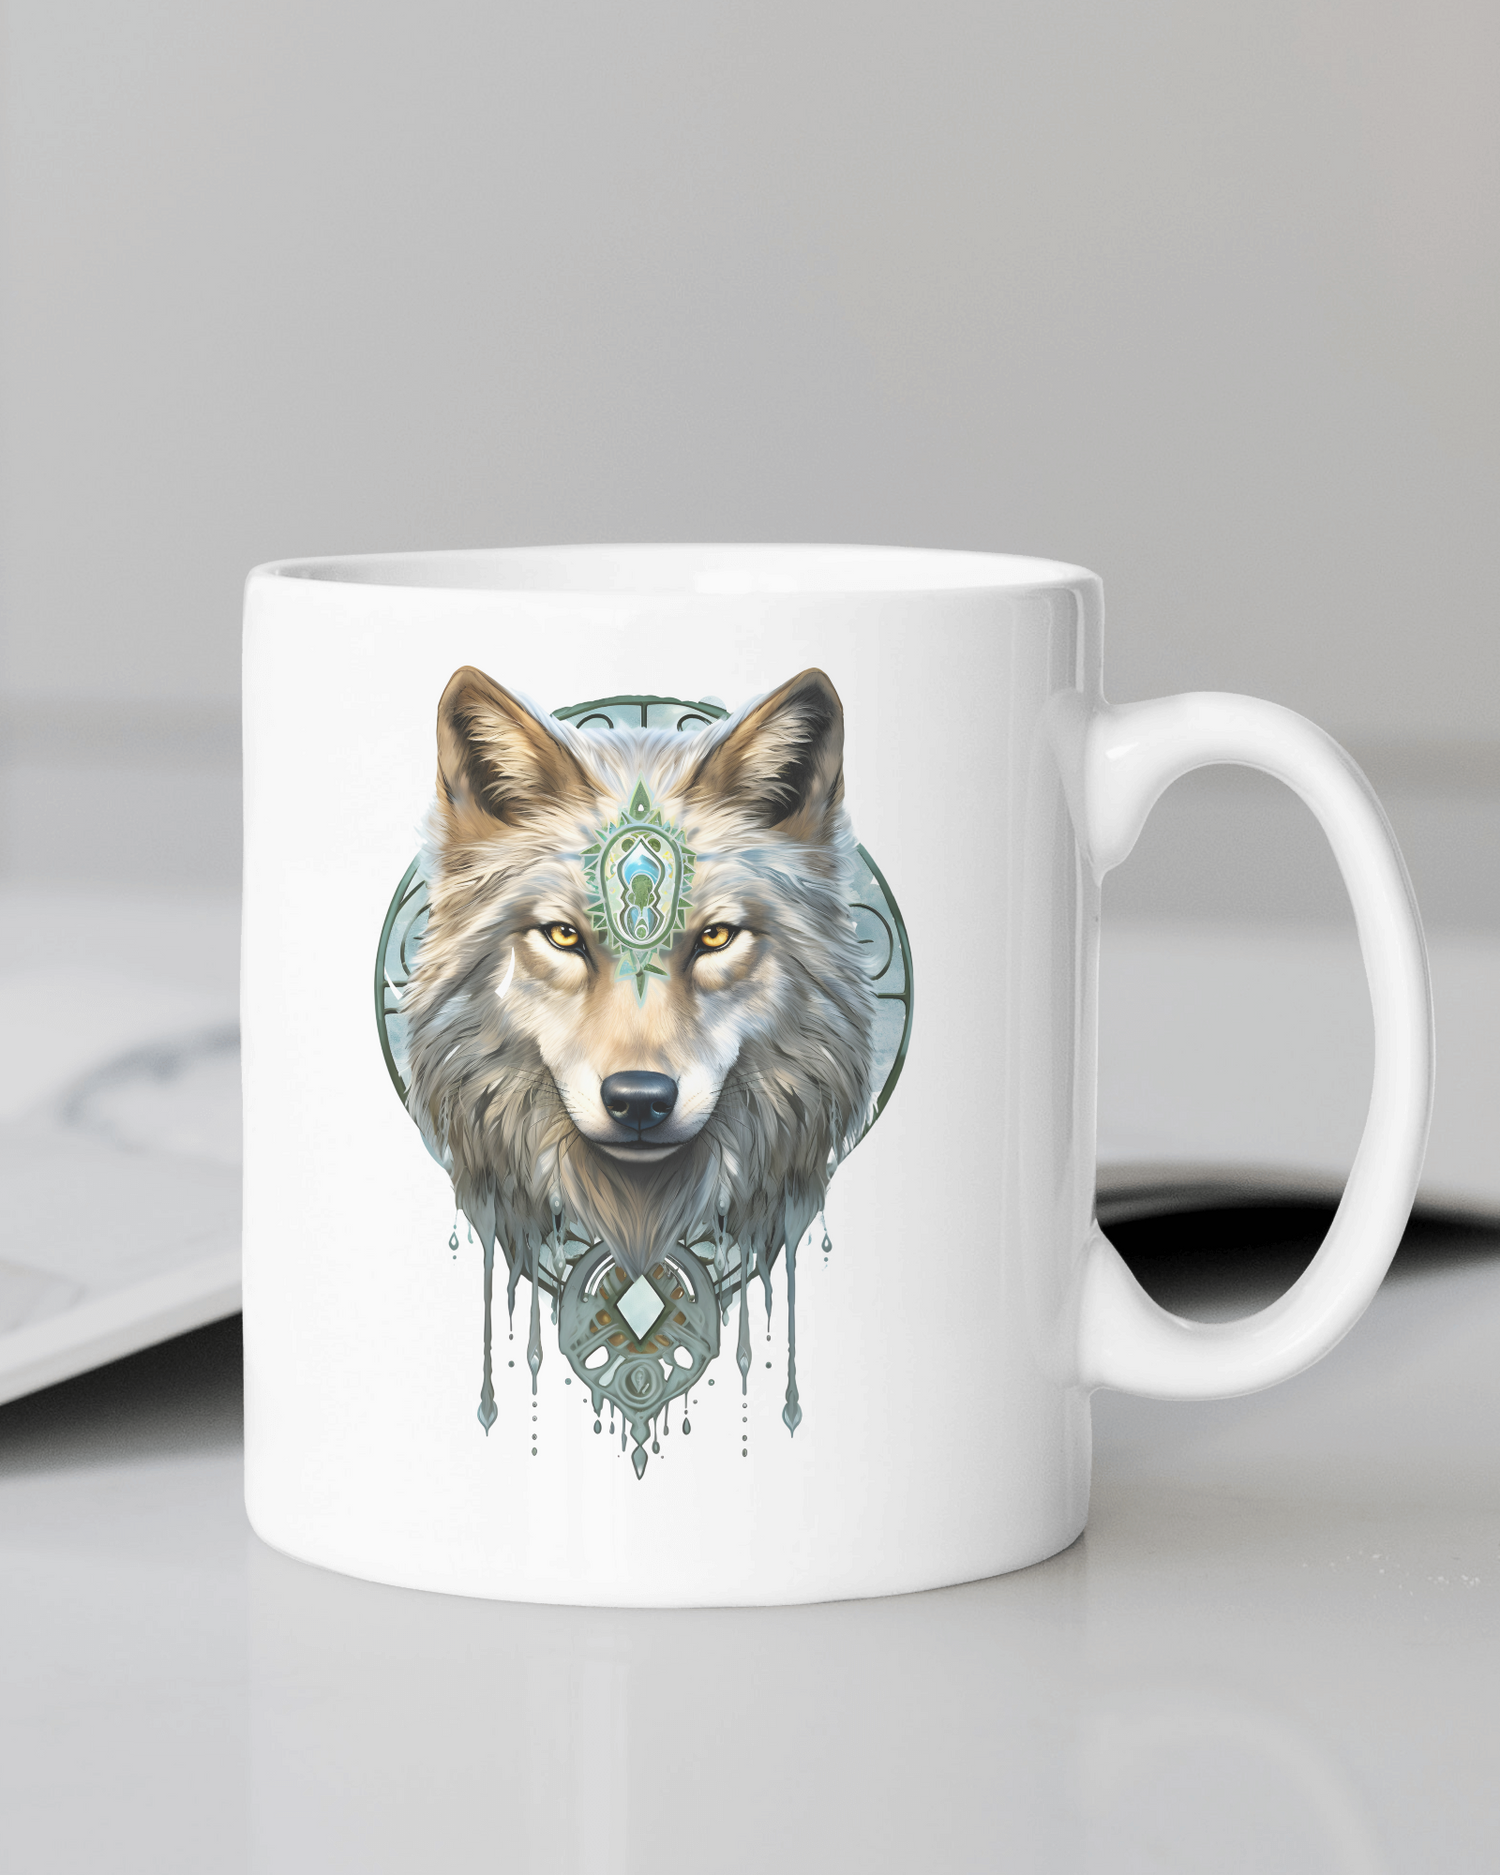 Spirit Animal Wolf, PNG File, Sublimation Image, Digital download, digital file - CosmicDeva